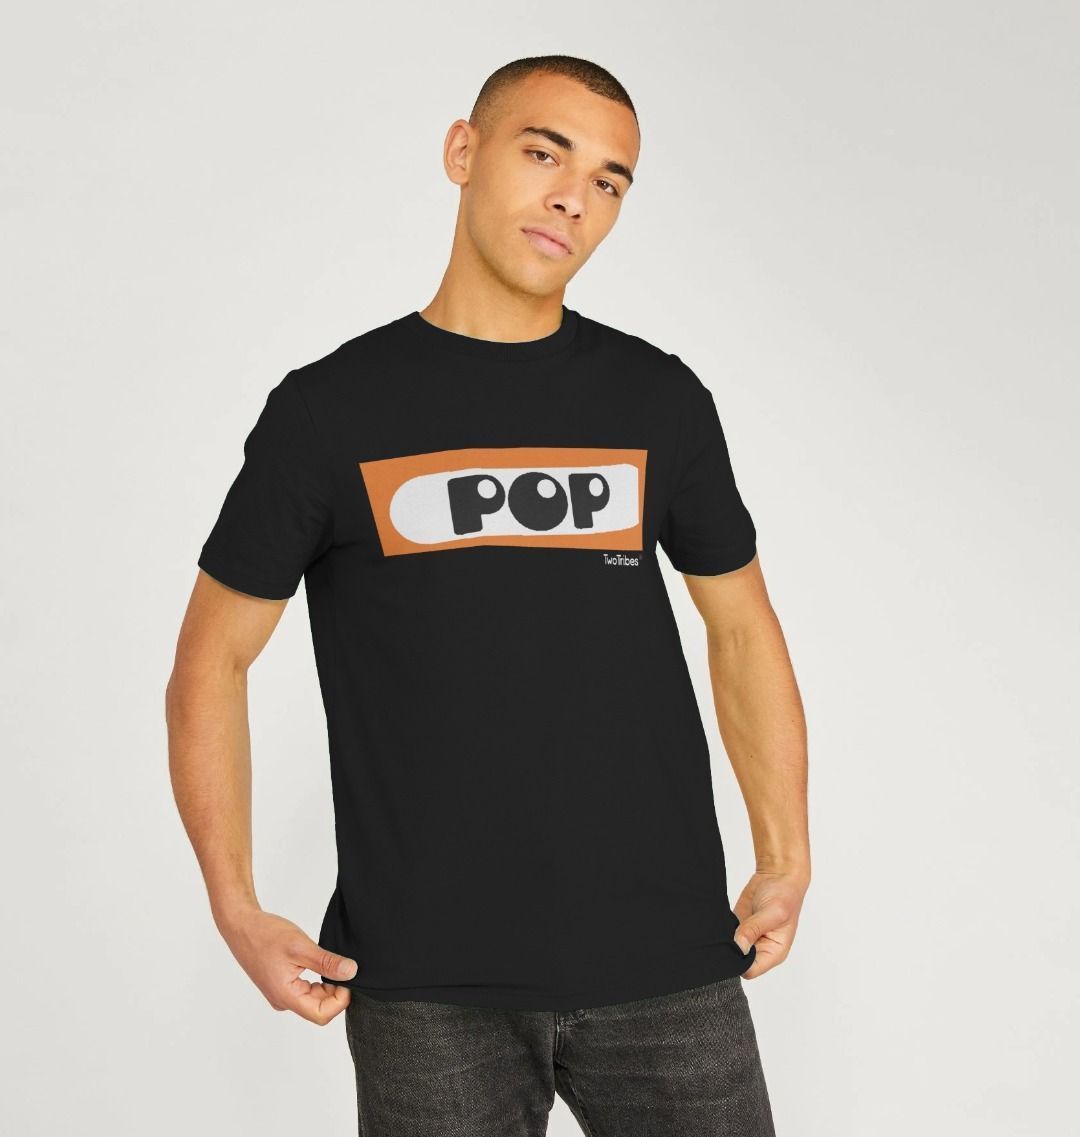 Pop T Shirt